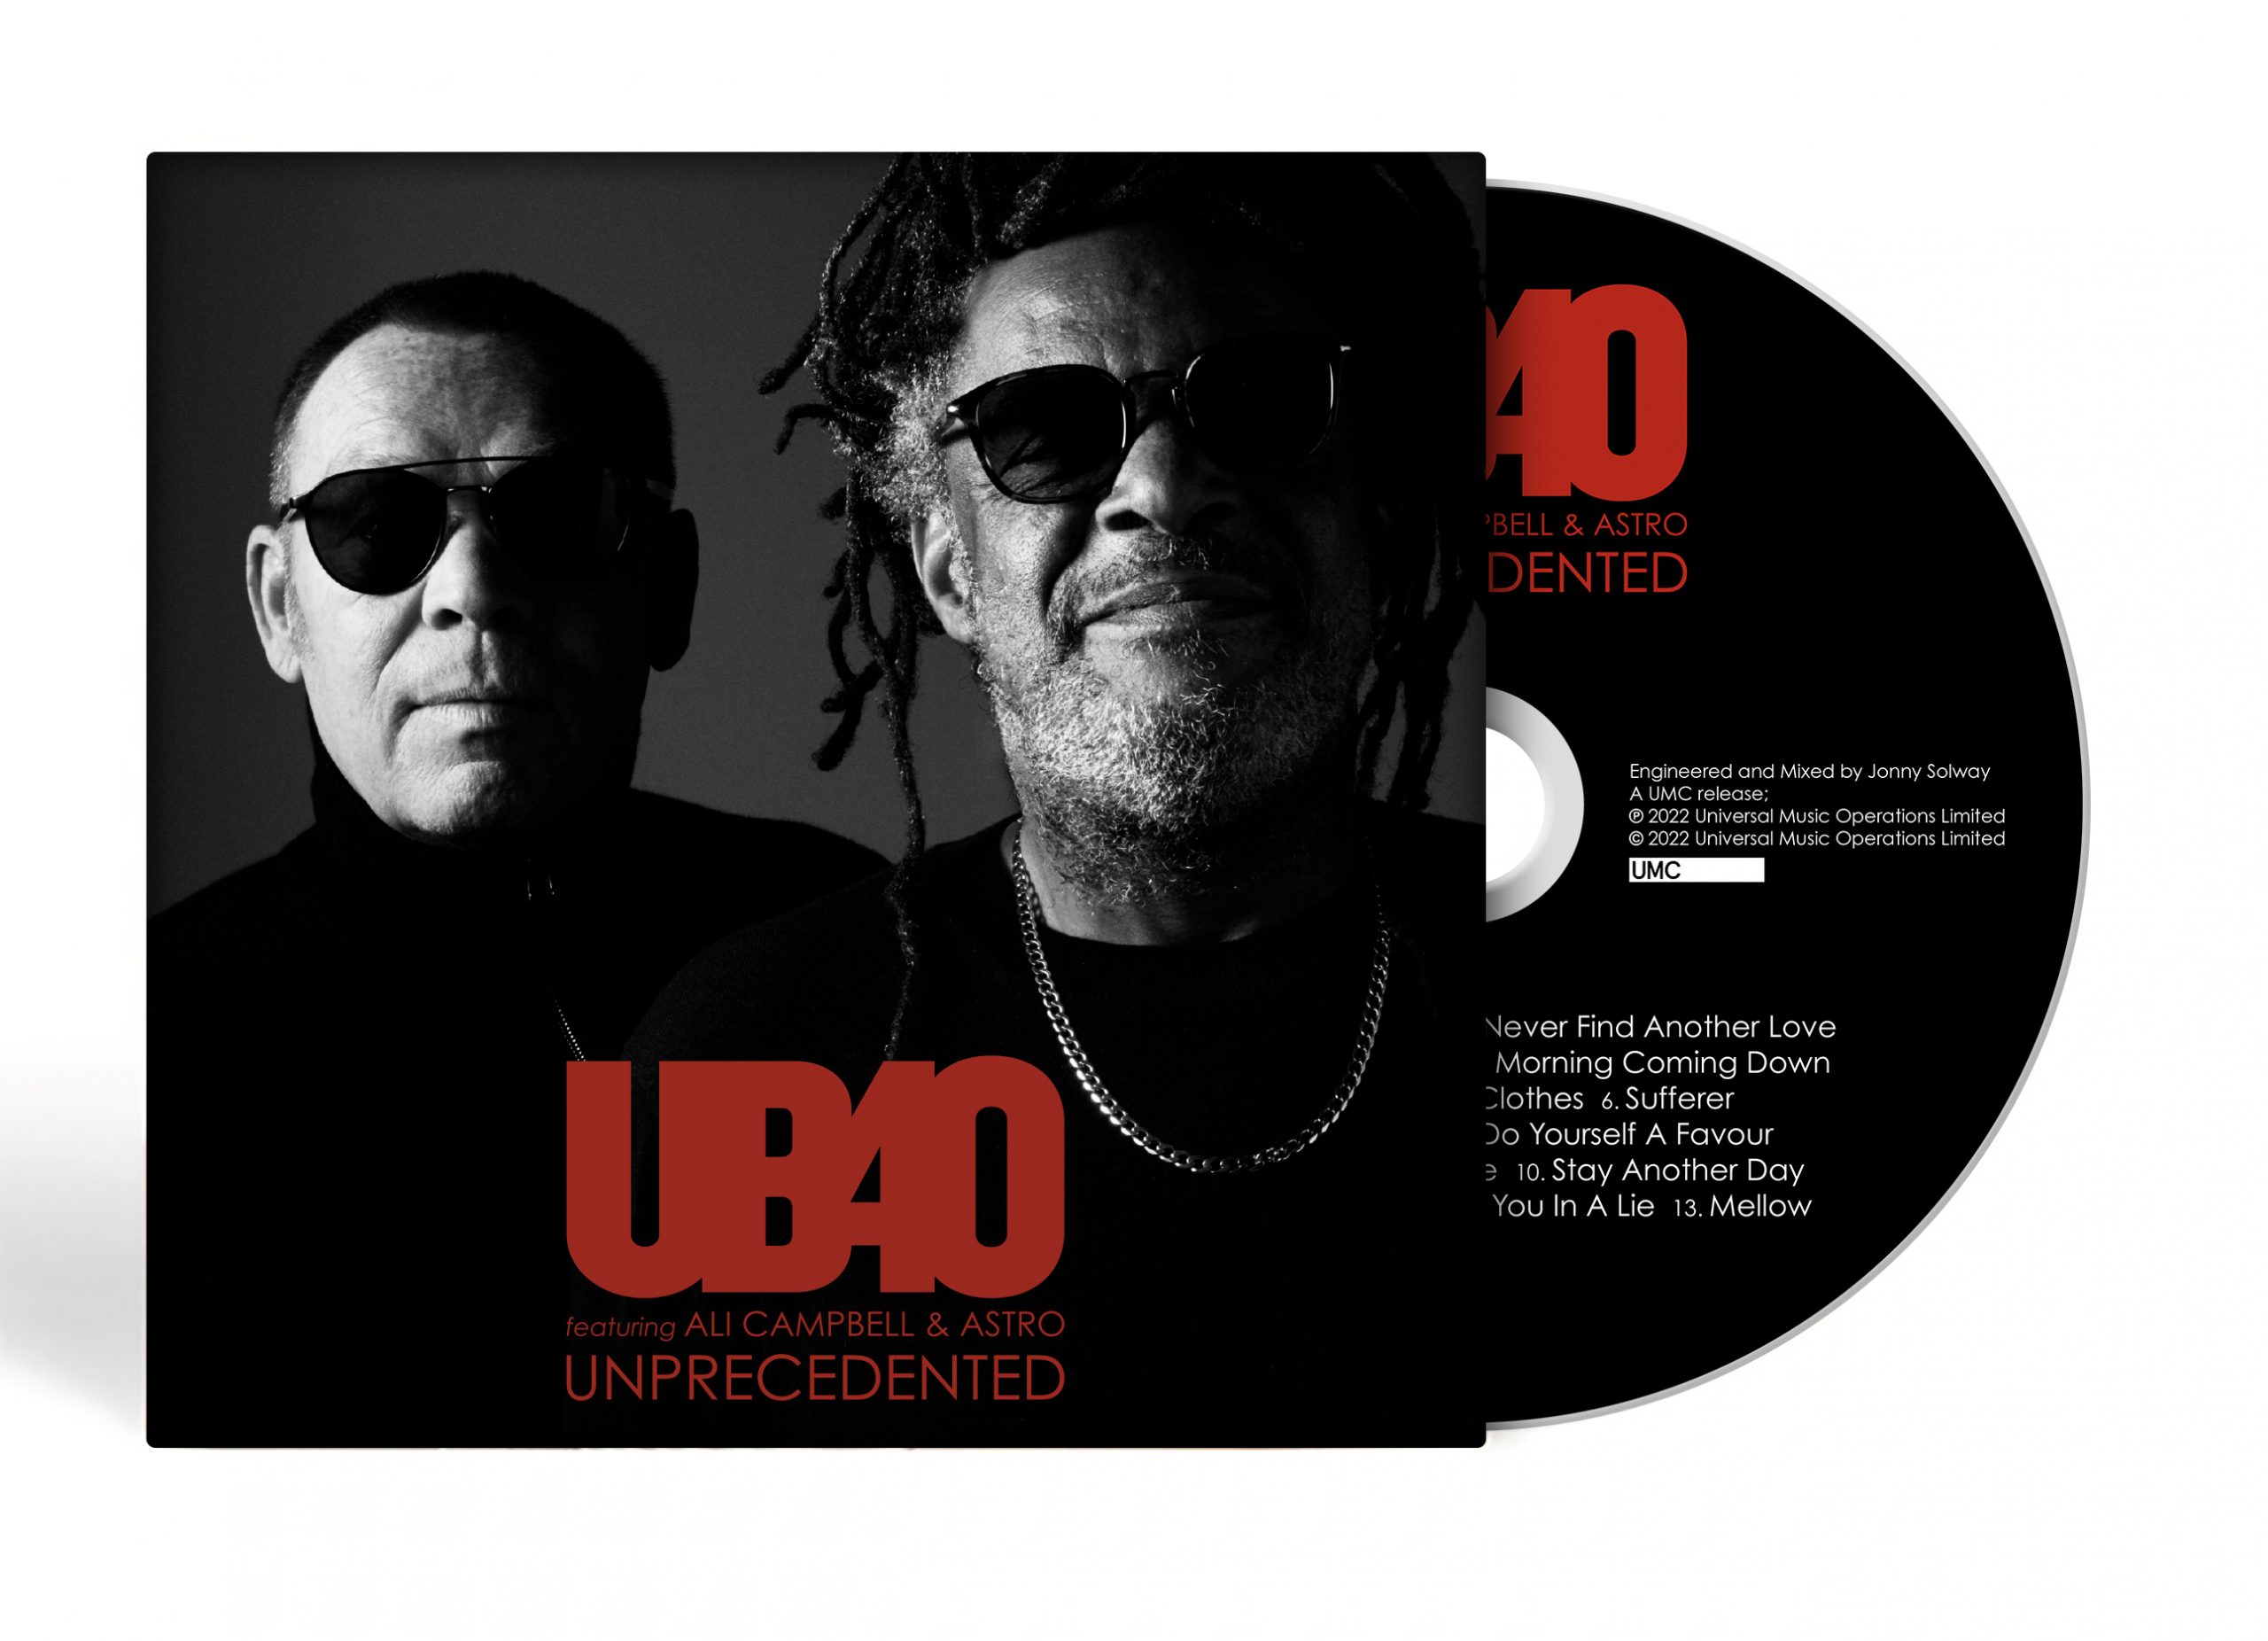 CD Shop - UB40 UNPRECEDENTED